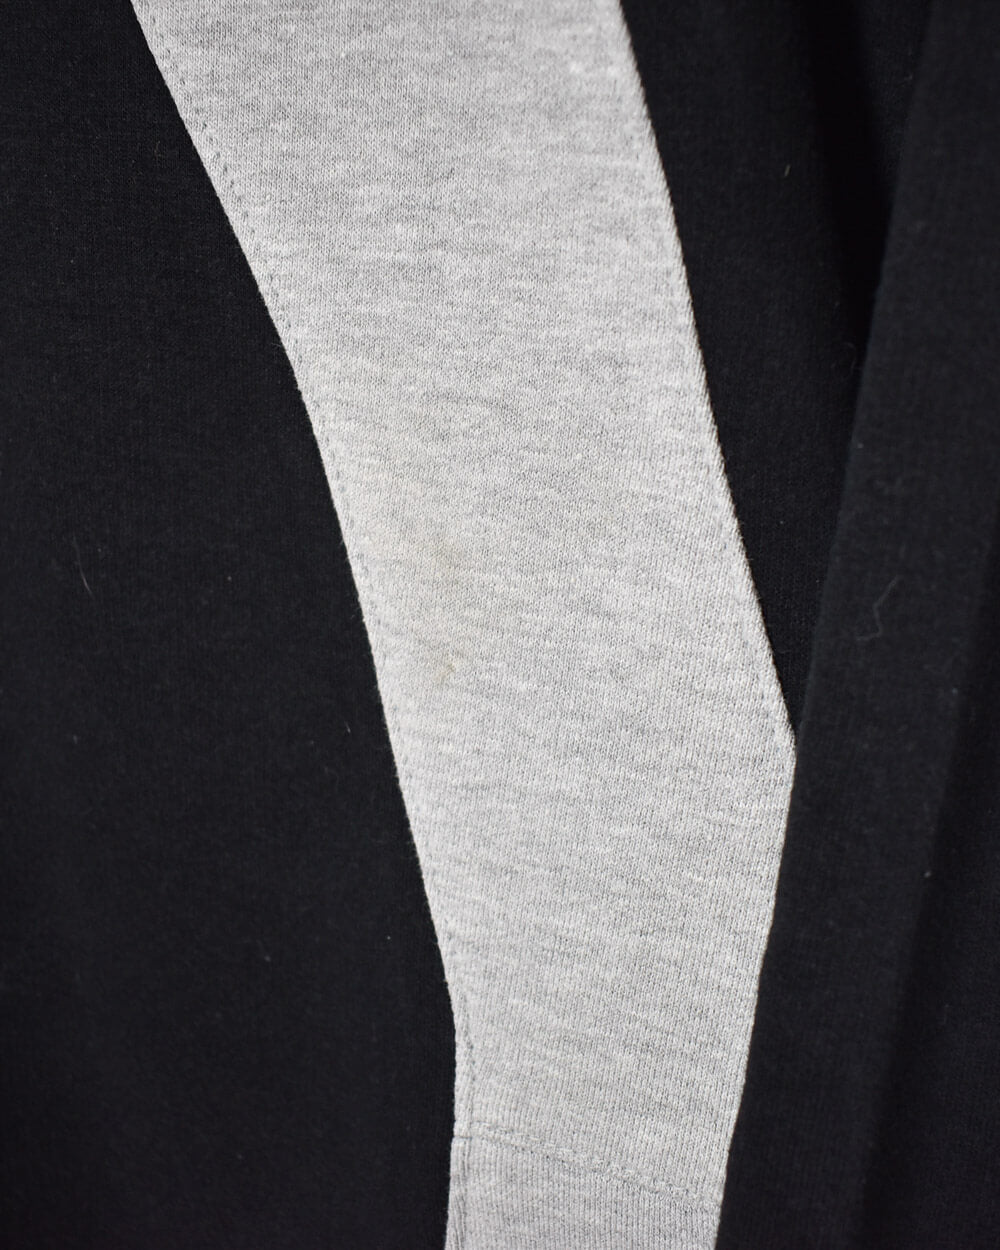 Black Kappa Rework Sweatshirt - Medium